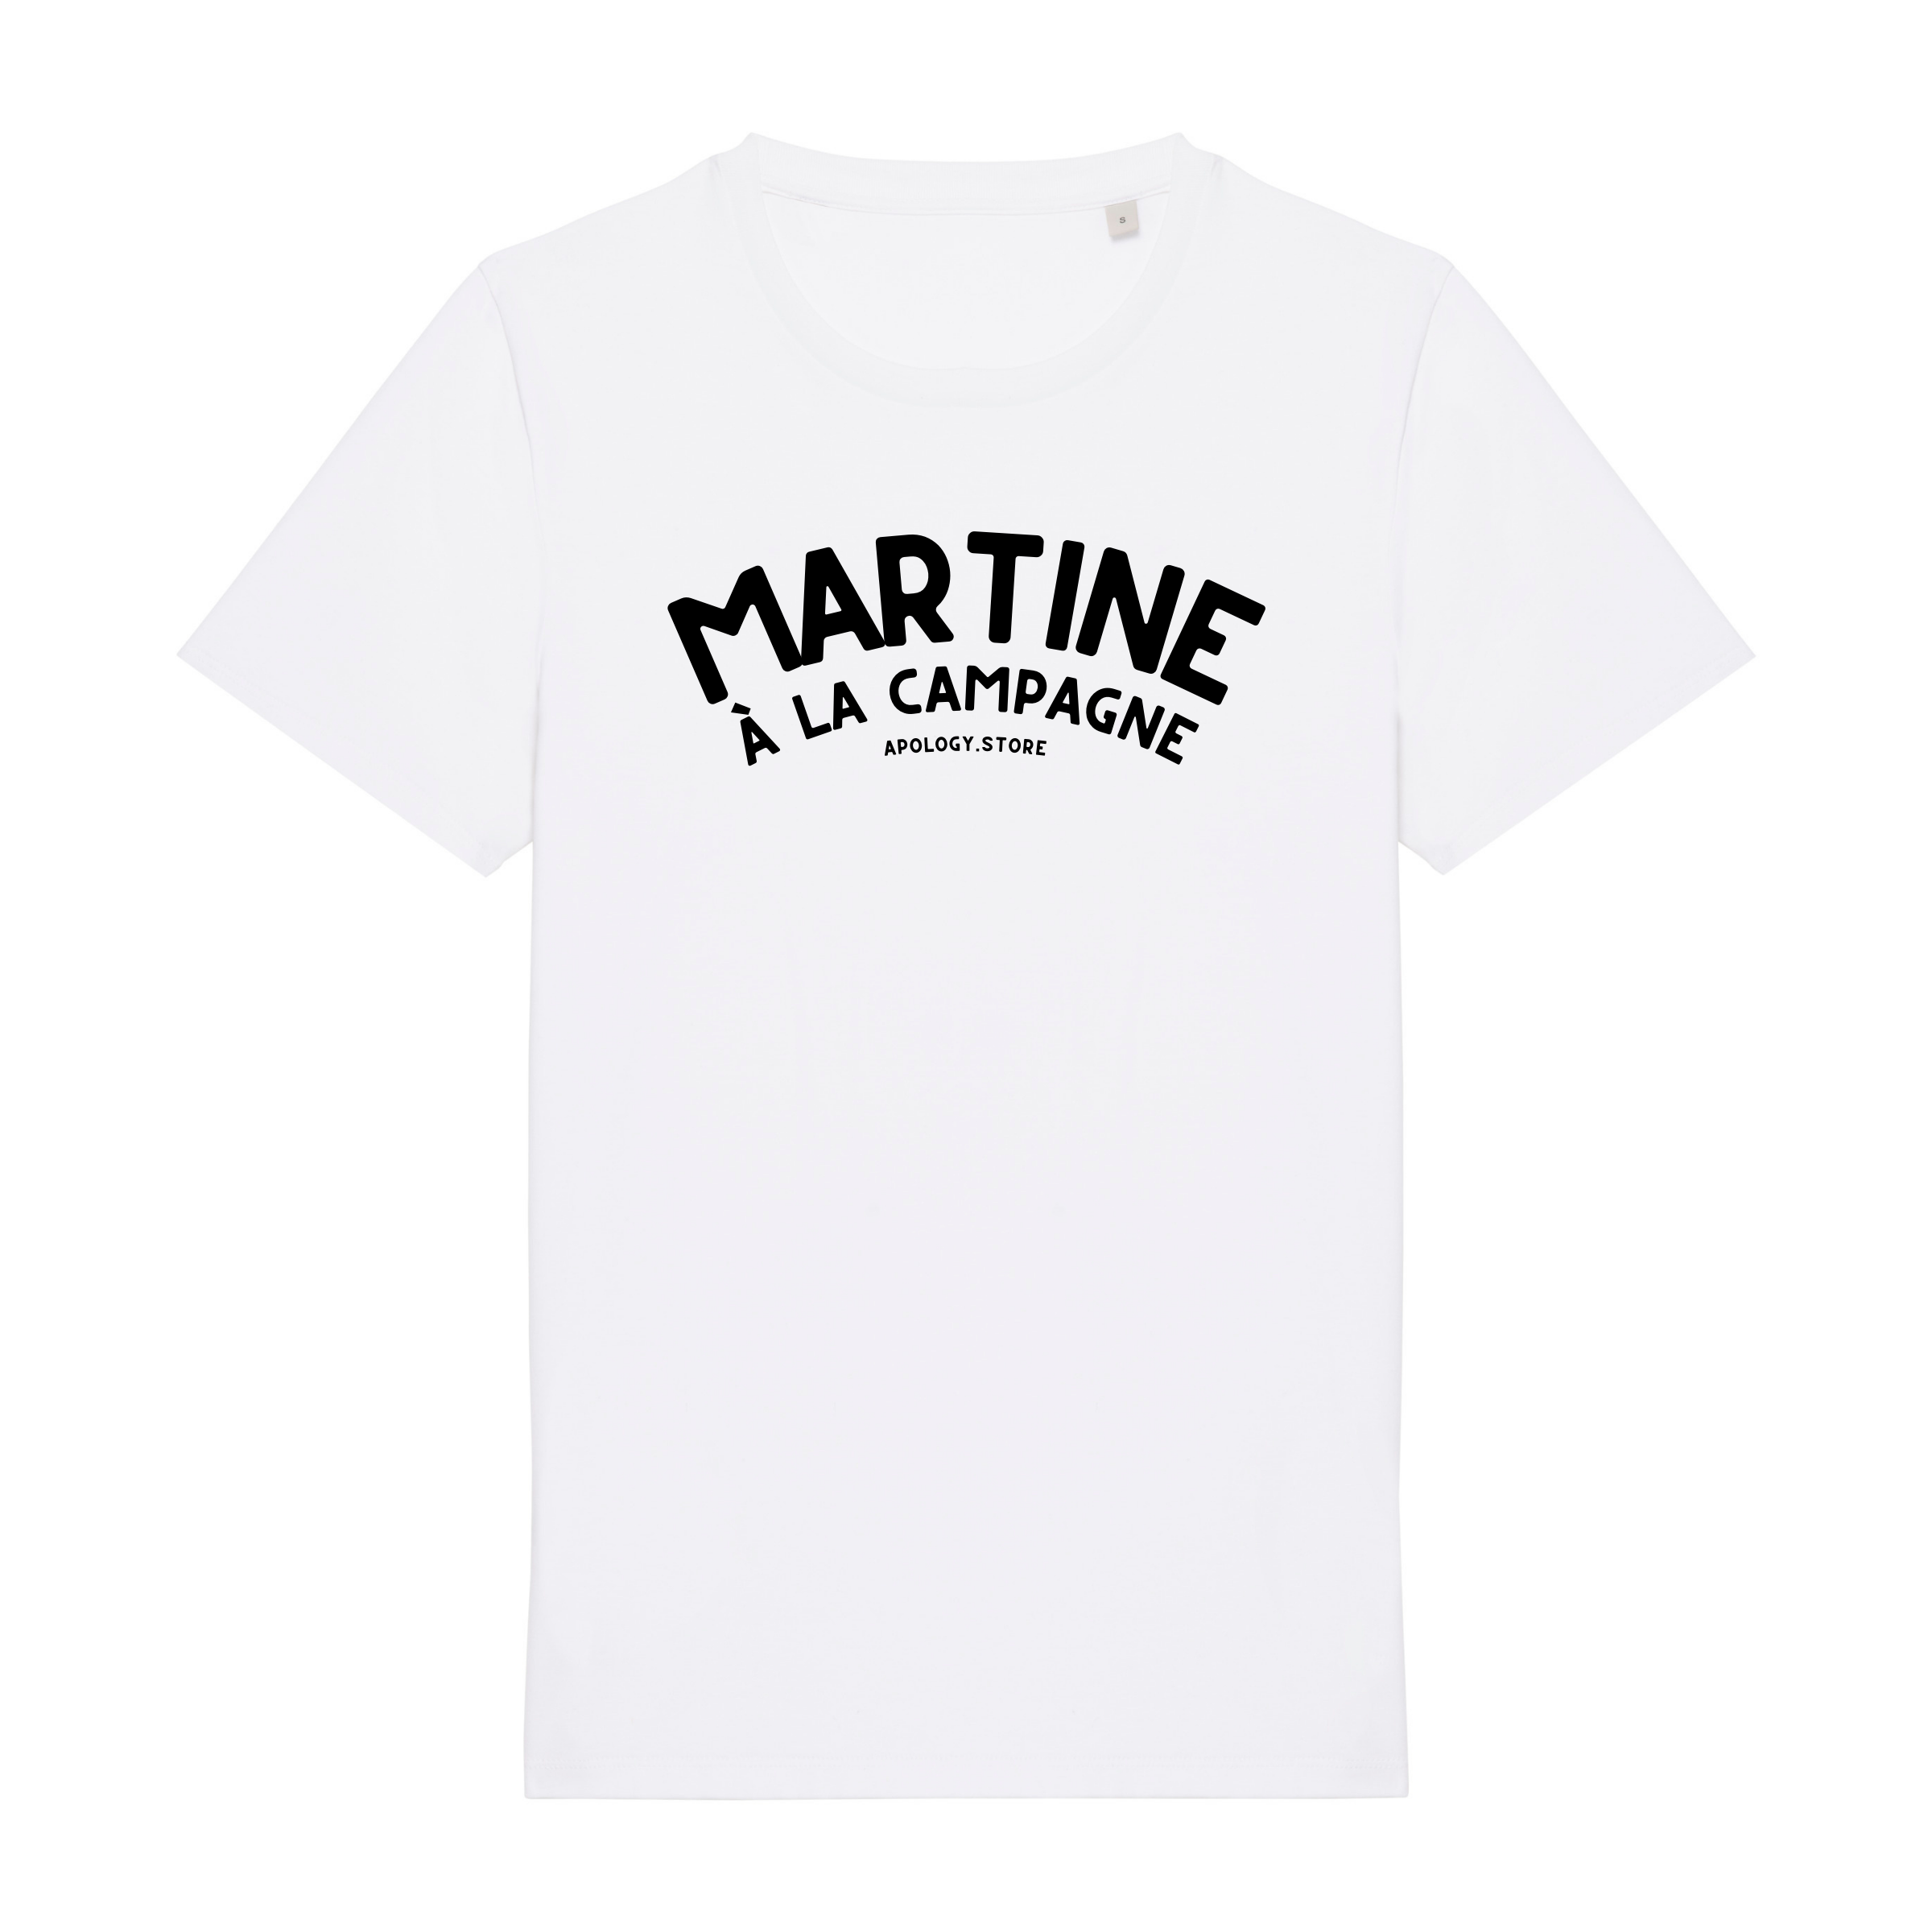 T-shirt Martine à la Campagne - Fabriqué au Portugal XS Blanc - Imprimé en France